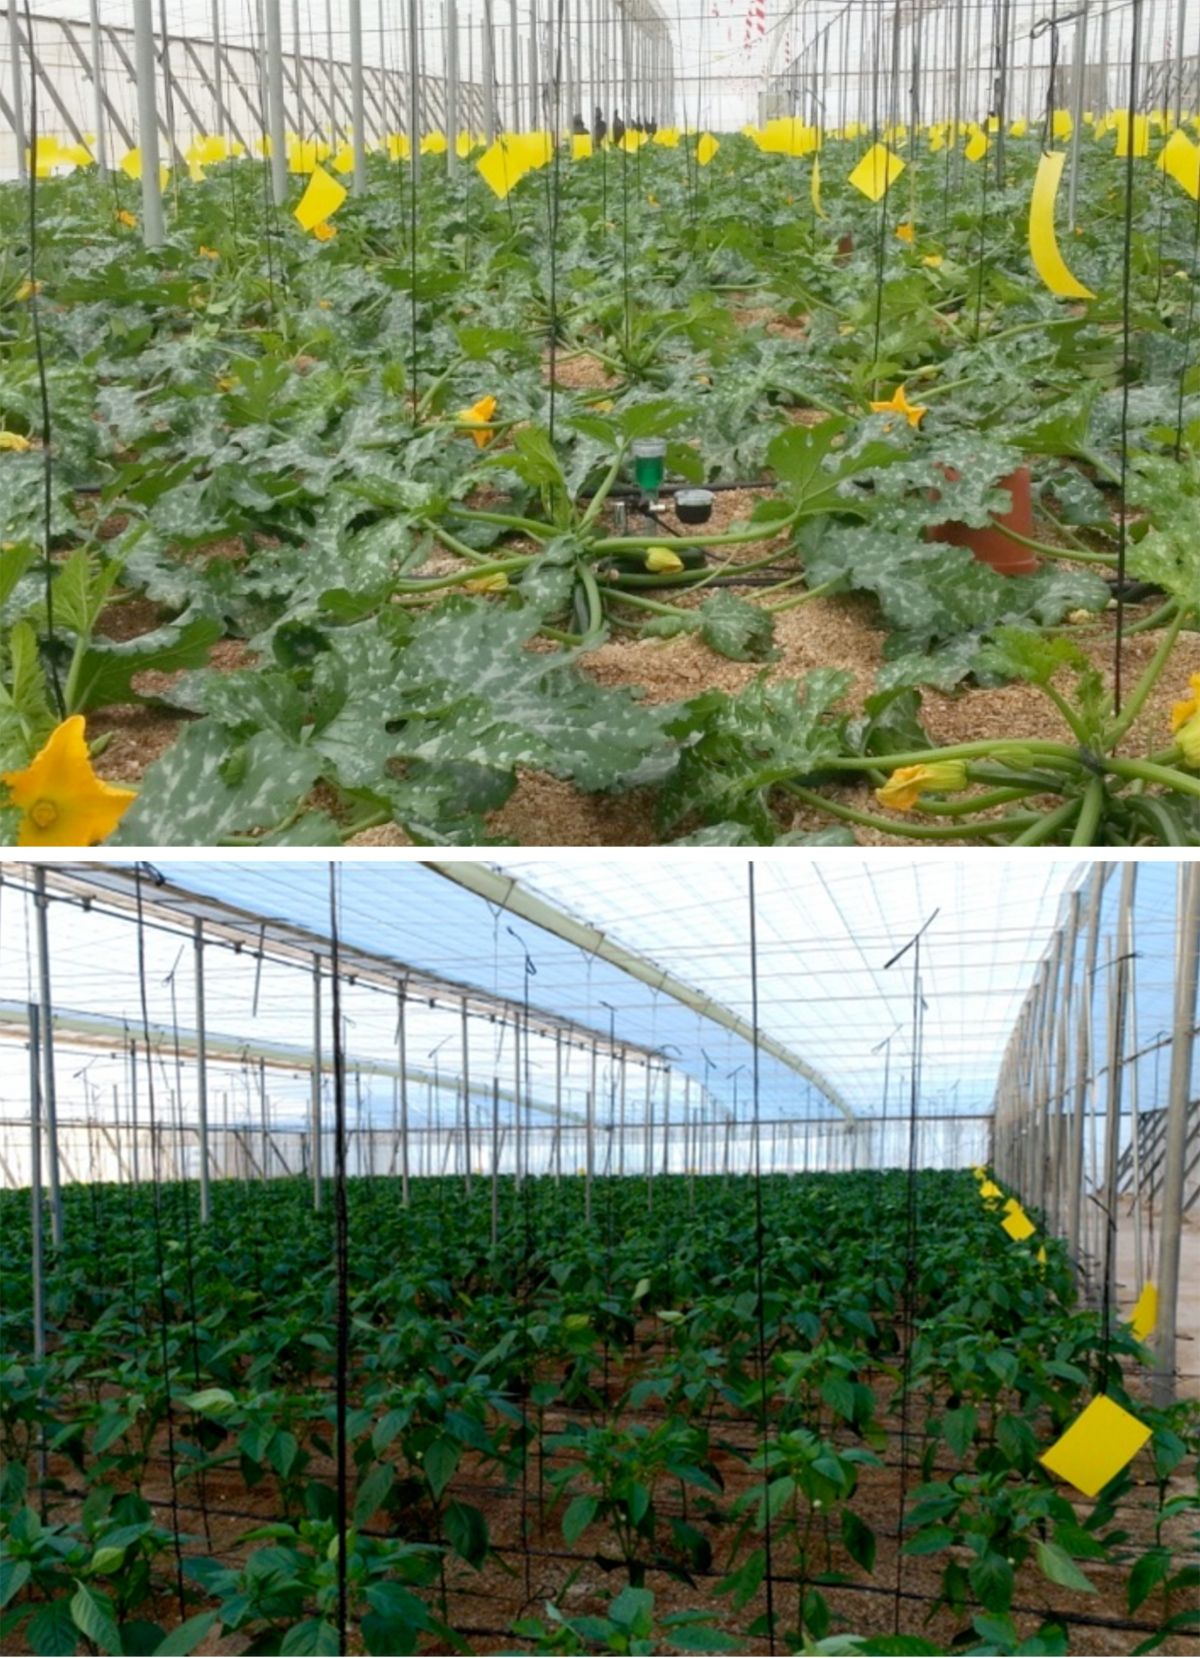 Fotografa 1. Vista general del cultivo ensayado de calabacn (arriba) y del cultivo de pimiento (abajo)